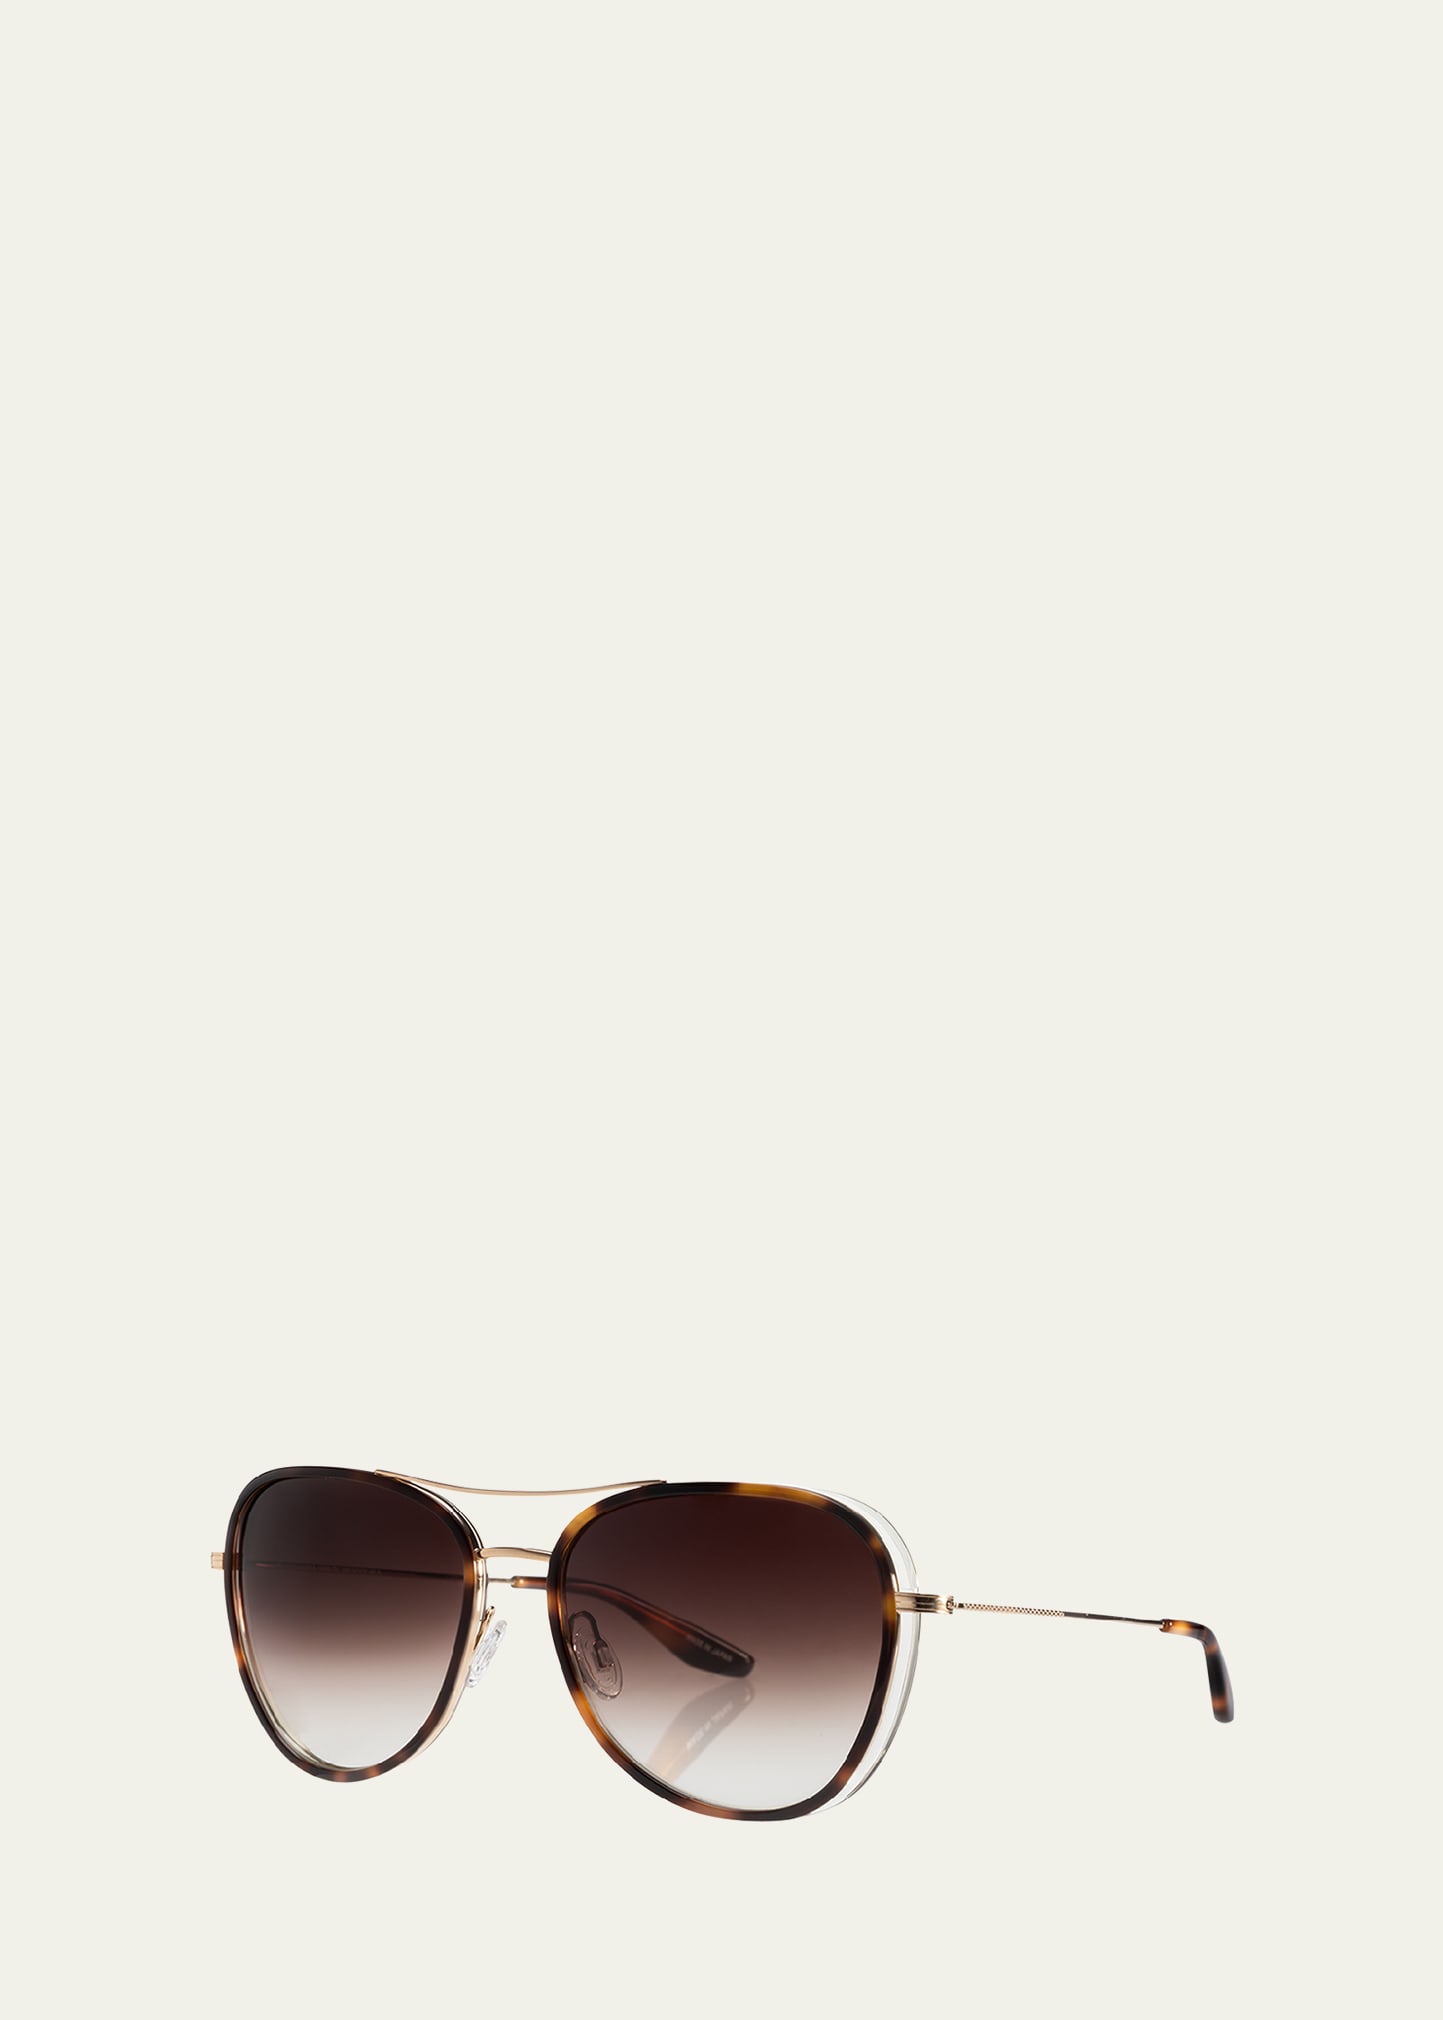 Gesner Acetate & Titanium Aviator Sunglasses